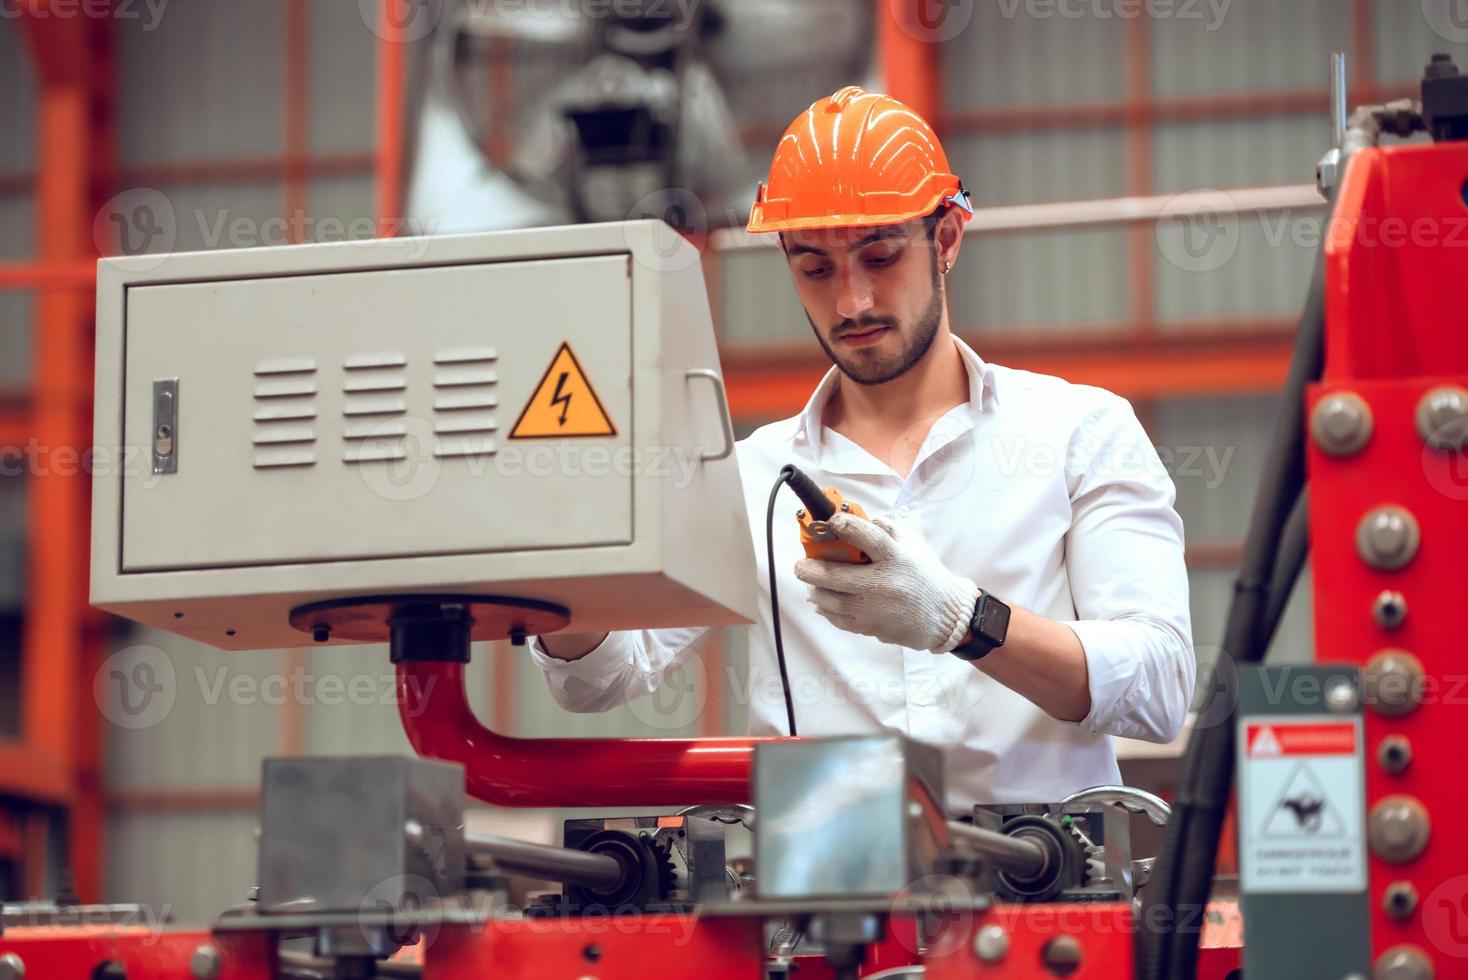 operário verificando o processo de máquina elétrica no local de trabalho industrial, usando capacete para segurança foto